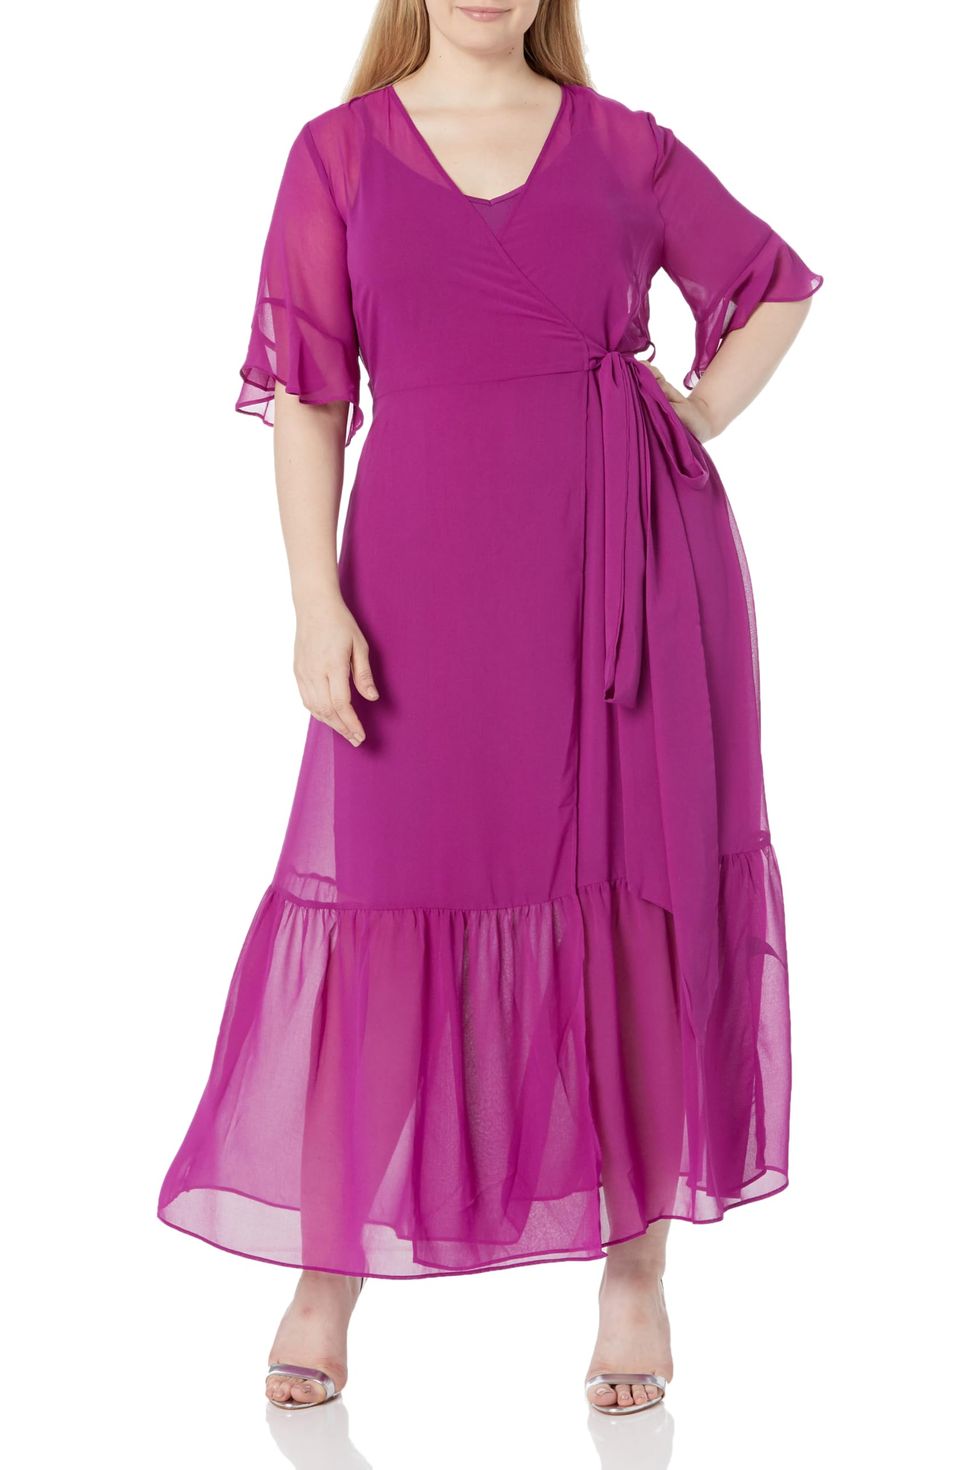 Mauve Jacquard Dress - Flutter Sleeve Dress - Tie-Waist Dress - Lulus